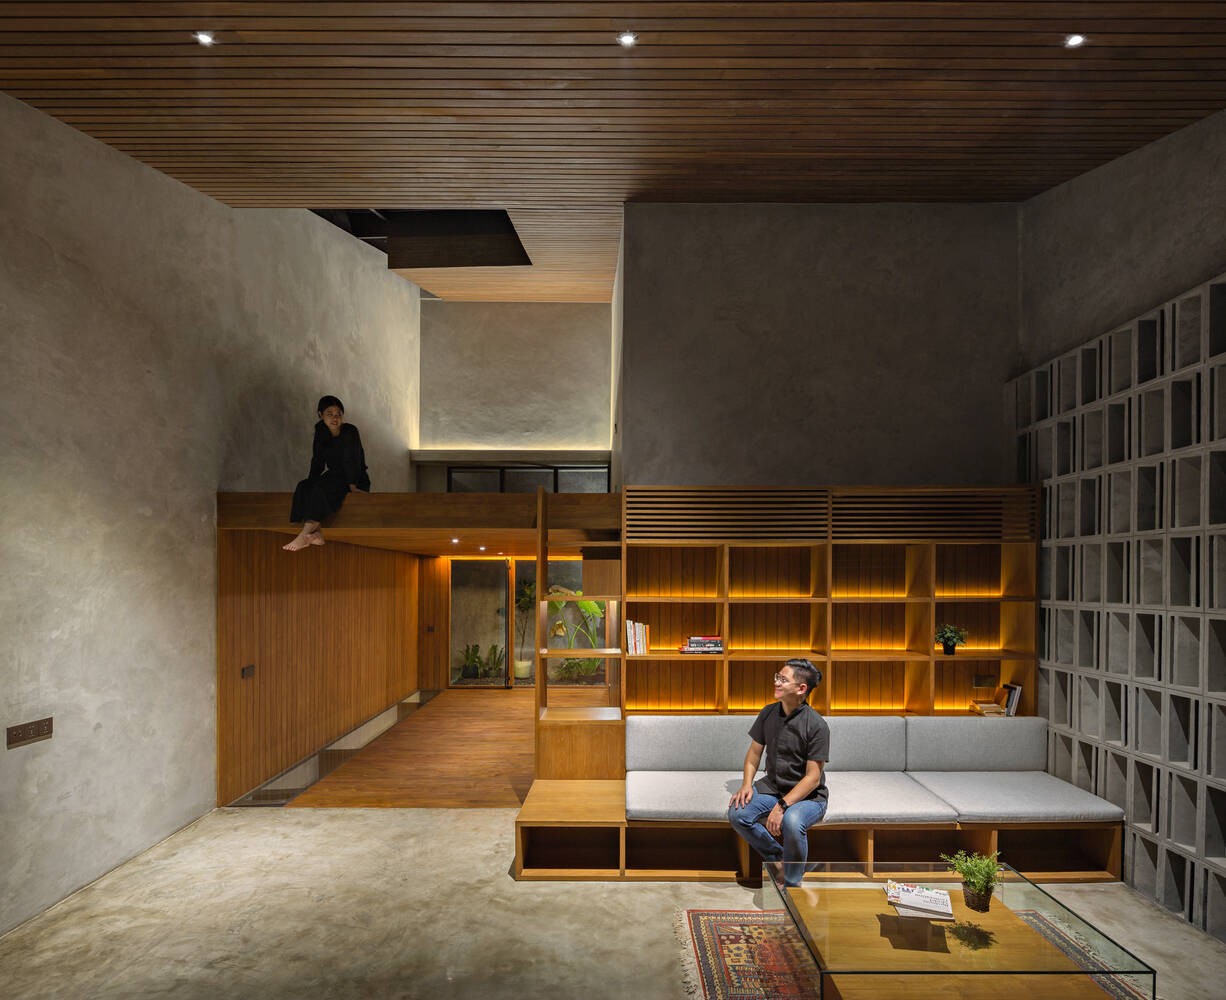 
Không gian trong nhà cũng được trang trí bằng hai màu chủ đạo từ gỗ và bê tông, đảm bảo sự đồng bộ trong thiết kế toàn bộ công trình
